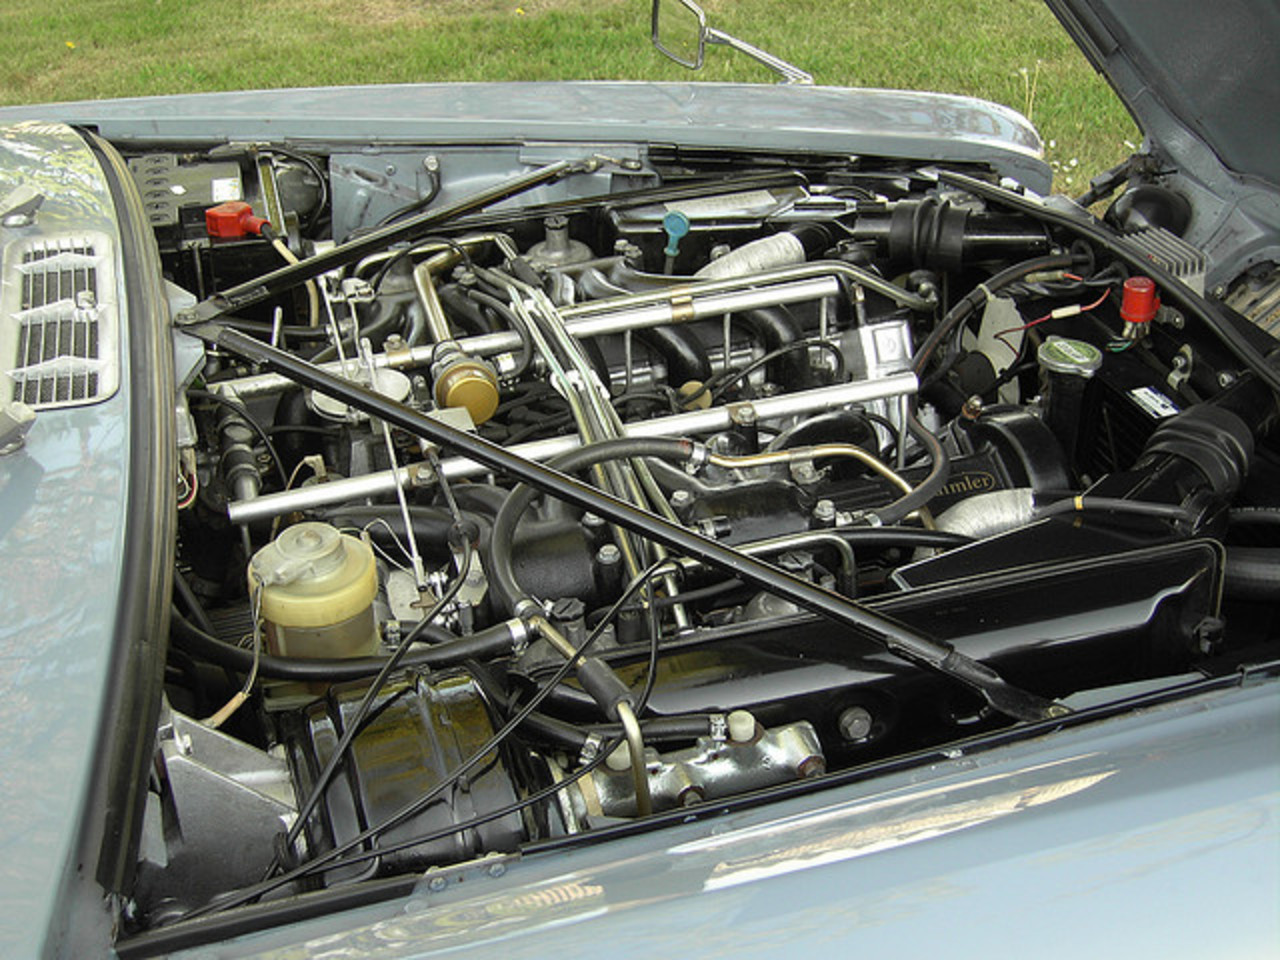 1974 Daimler Double Six V12 engine | Flickr - Photo Sharing!